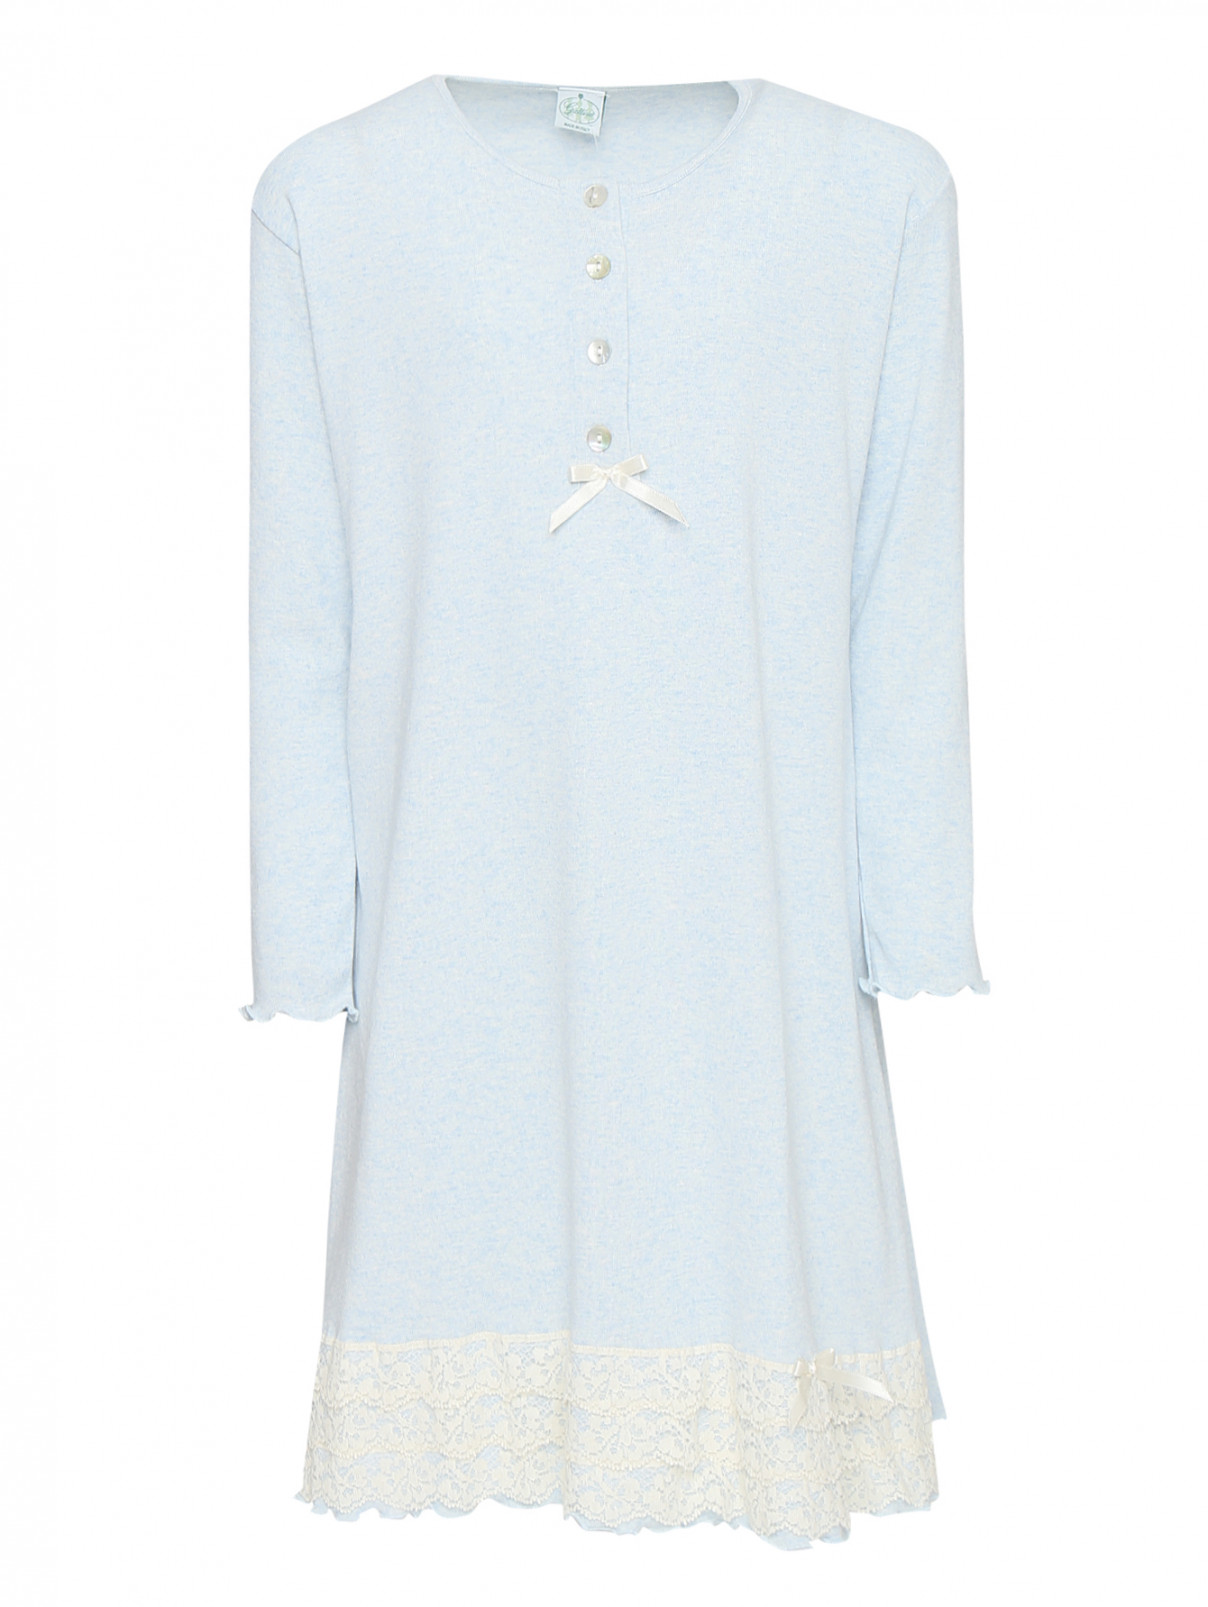 Ночная сорочка из хлопка с вышивкой Giottino  –  Общий вид  – Цвет:  Синий